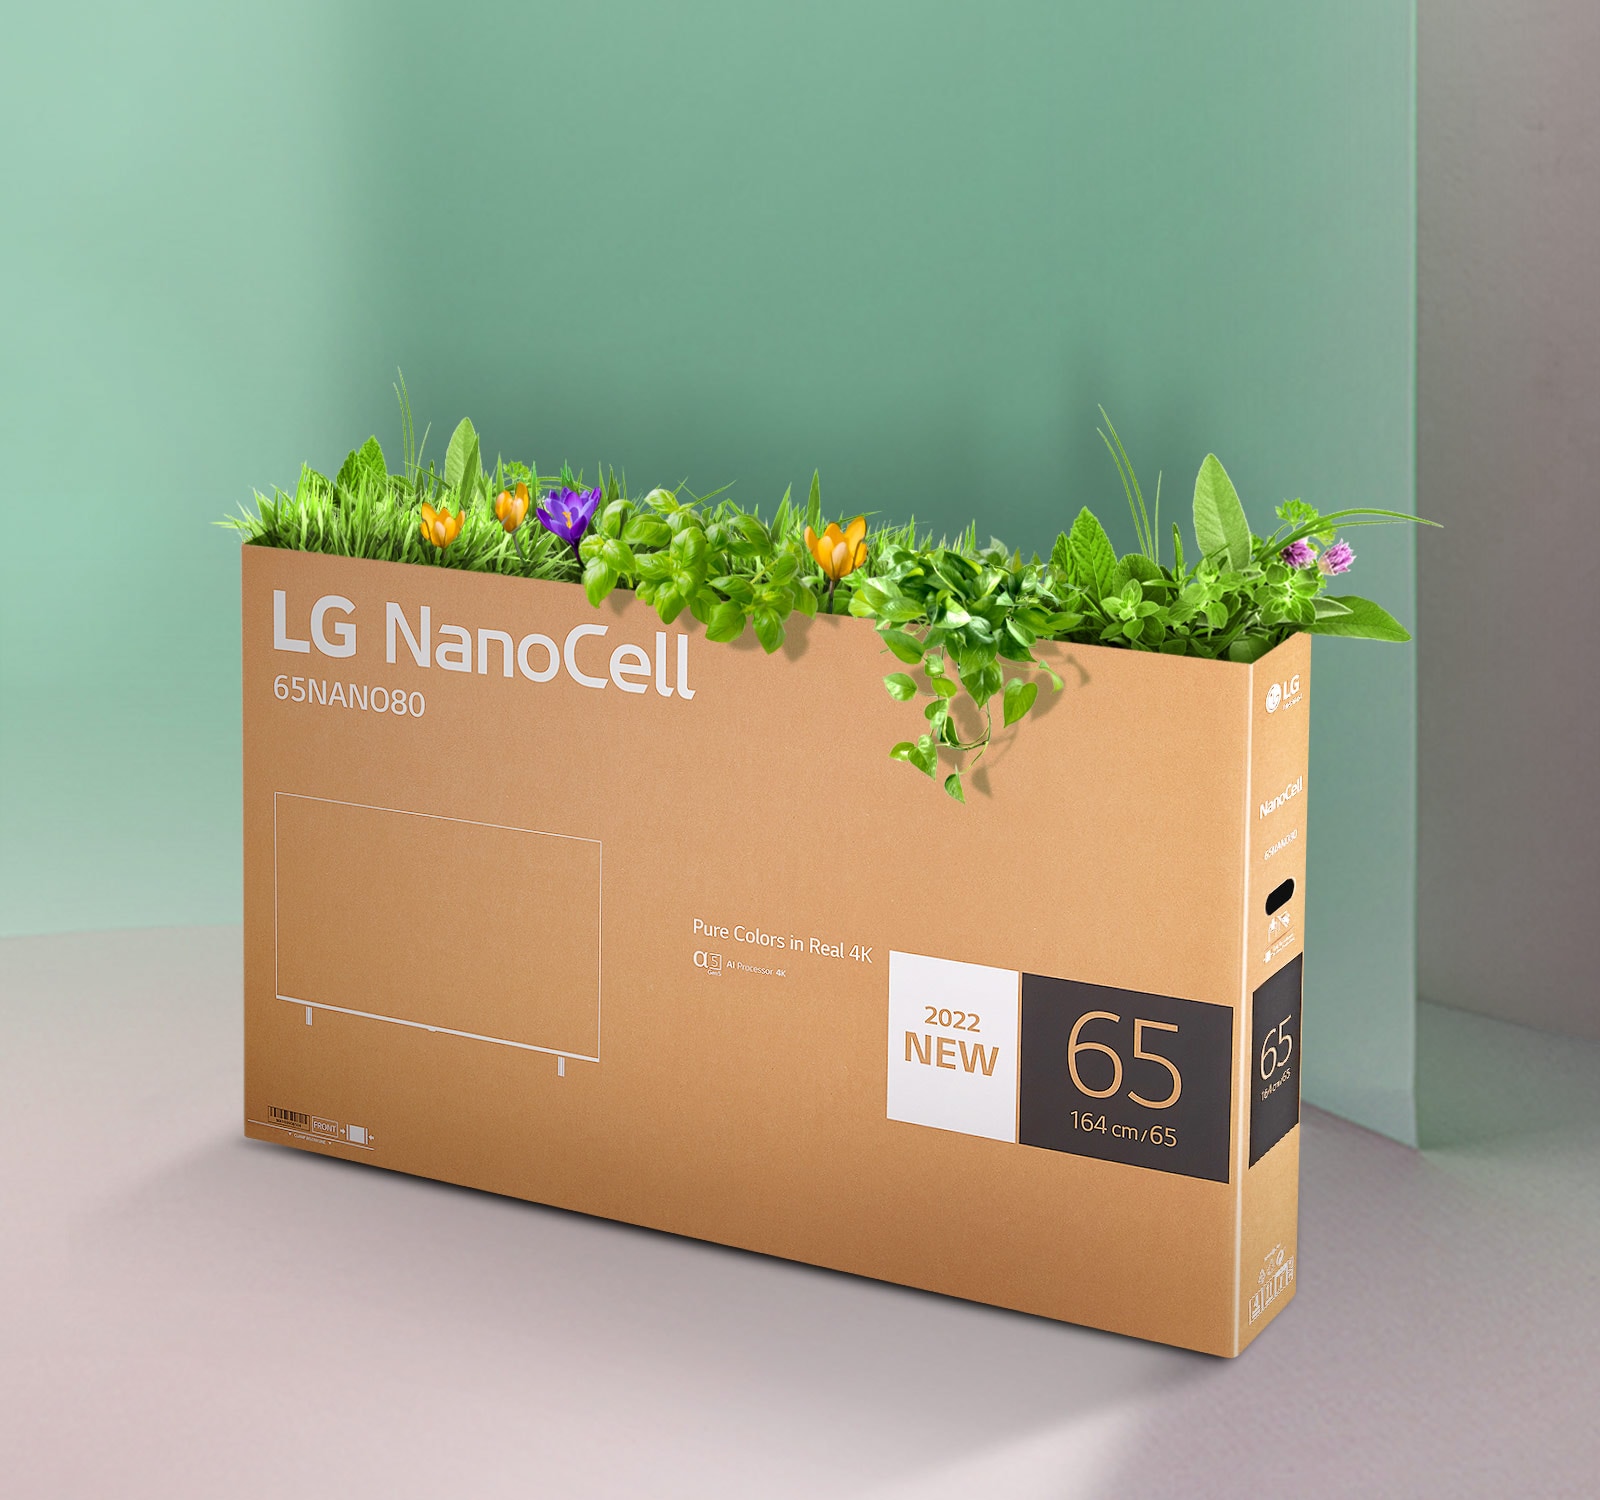 Kutija televizora LG NanoCell koja se može reciklirati s cvijećem i biljkama koje niču s vrha kutije.